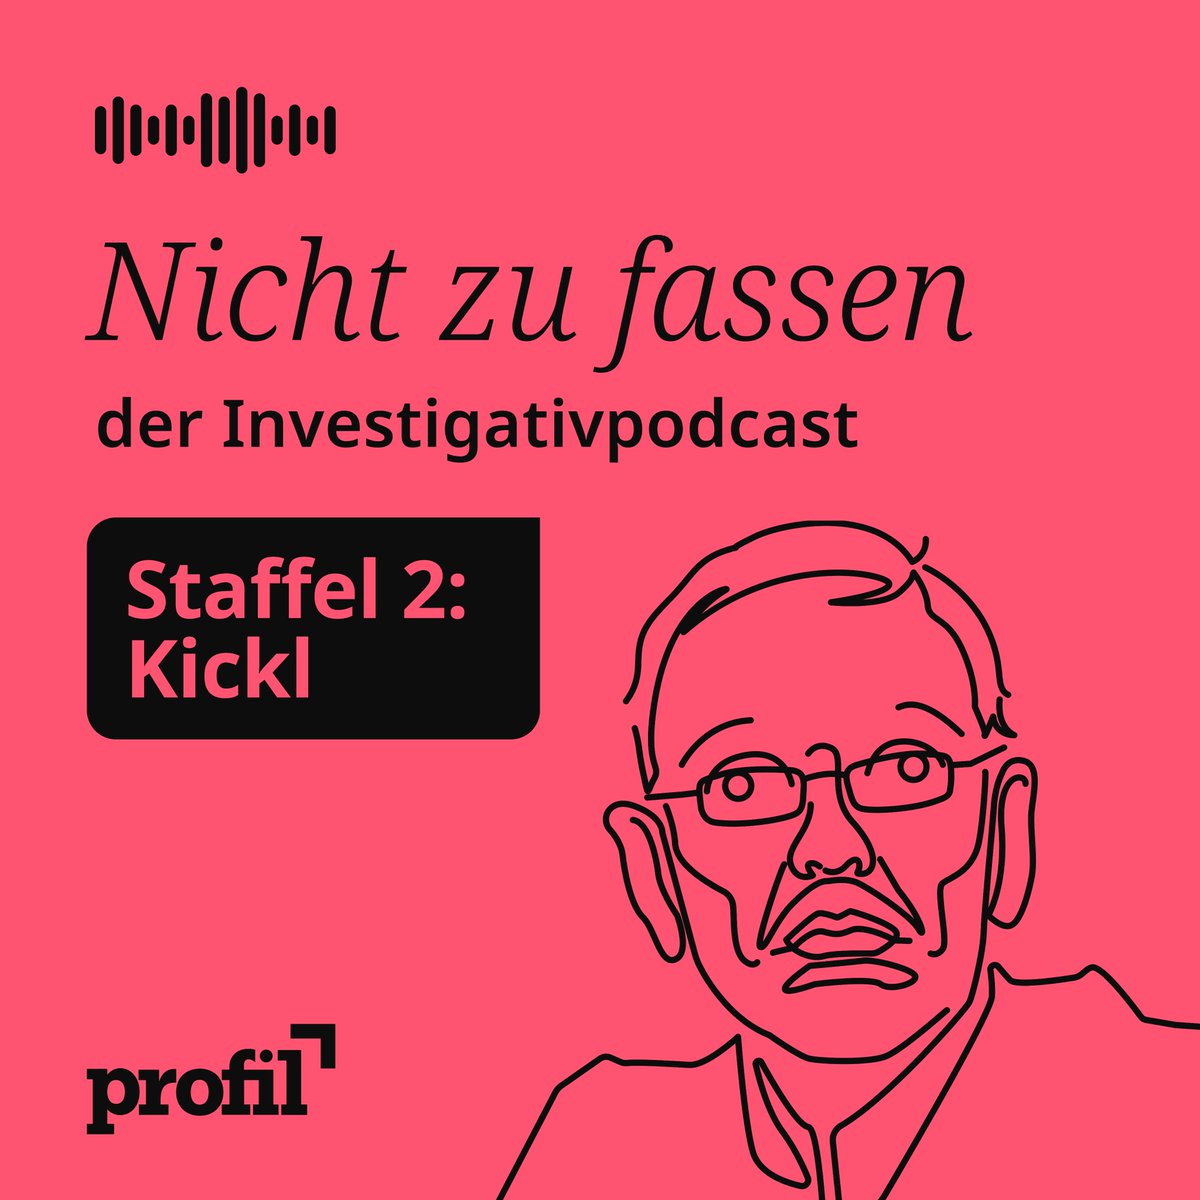 Kennen Sie Herbert Kickl? Natürlich kennen Sie ihn. Aber was wissen Sie wirklich über den FPÖ-Chef? Die neue Staffel von unserem Investigativ-Podcast startet am Montag: 5 Folgen von @RobTreichler und @bauer_gernot über Kickls Kindheit, seinen Aufstieg in der FPÖ, sein Weltbild.